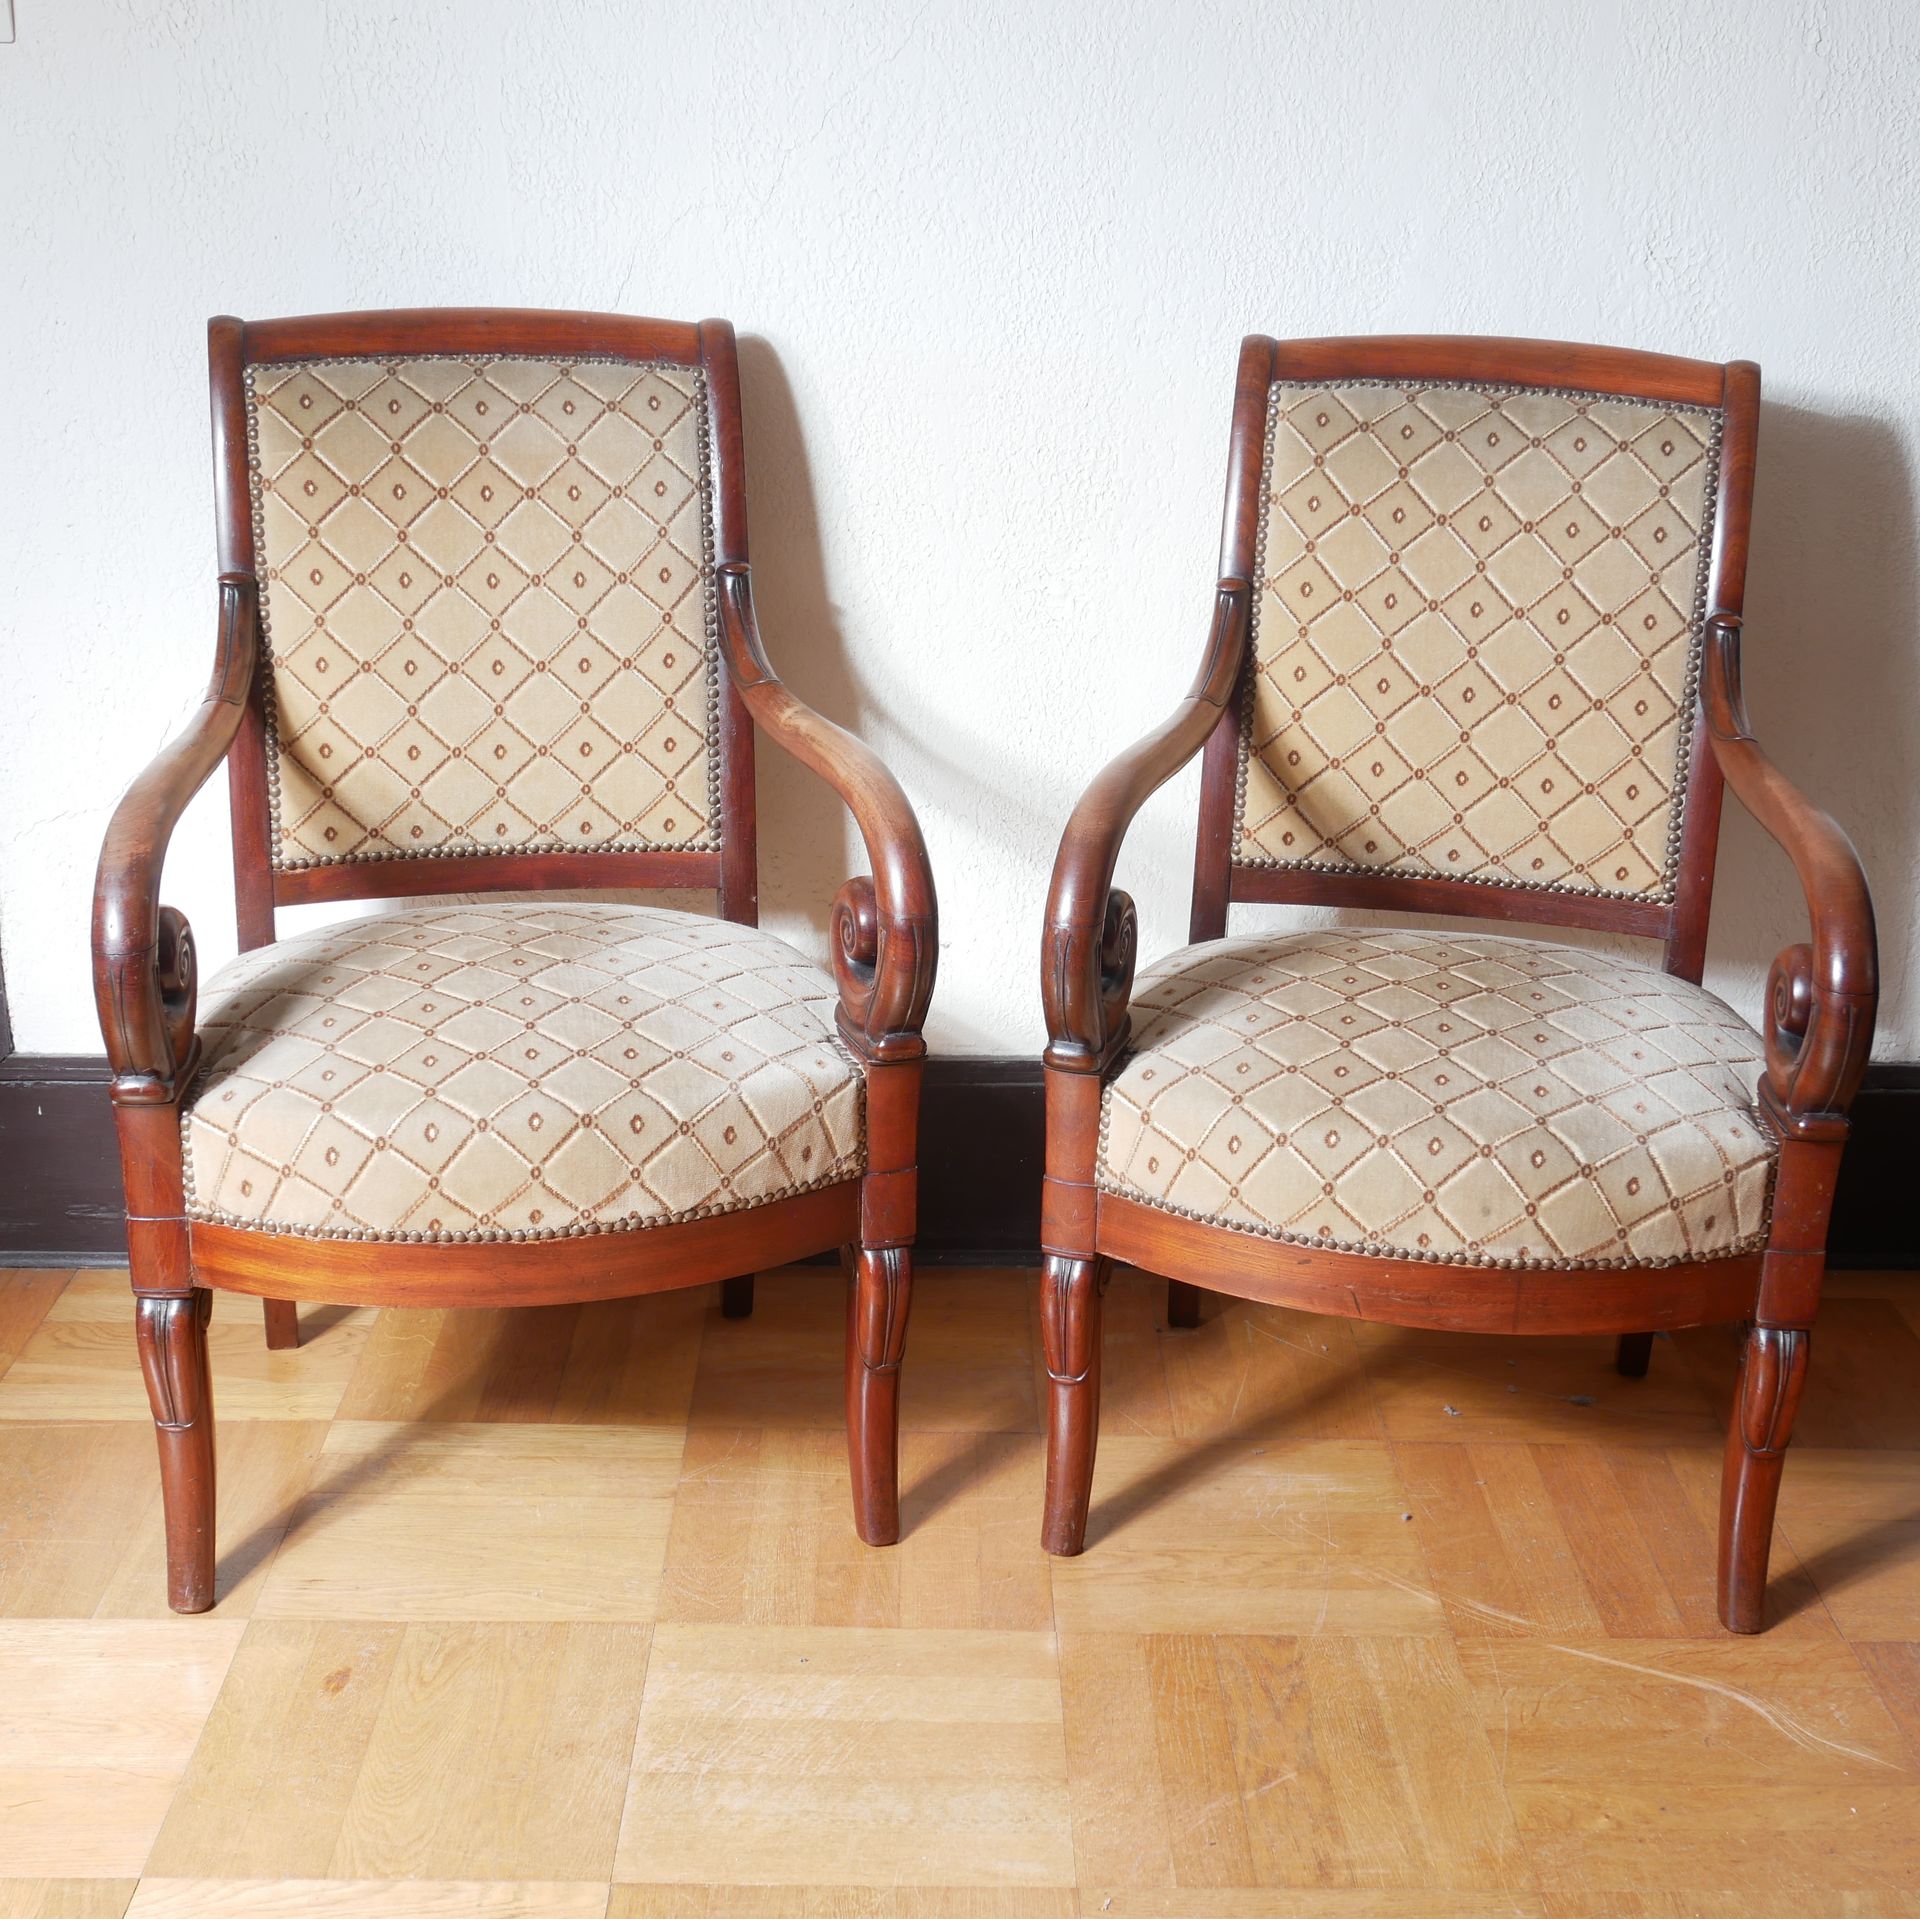 Null Paar Sessel aus Naturholz, Armlehnen mit Wicklung, 19. Jh. (Abnutzungen)